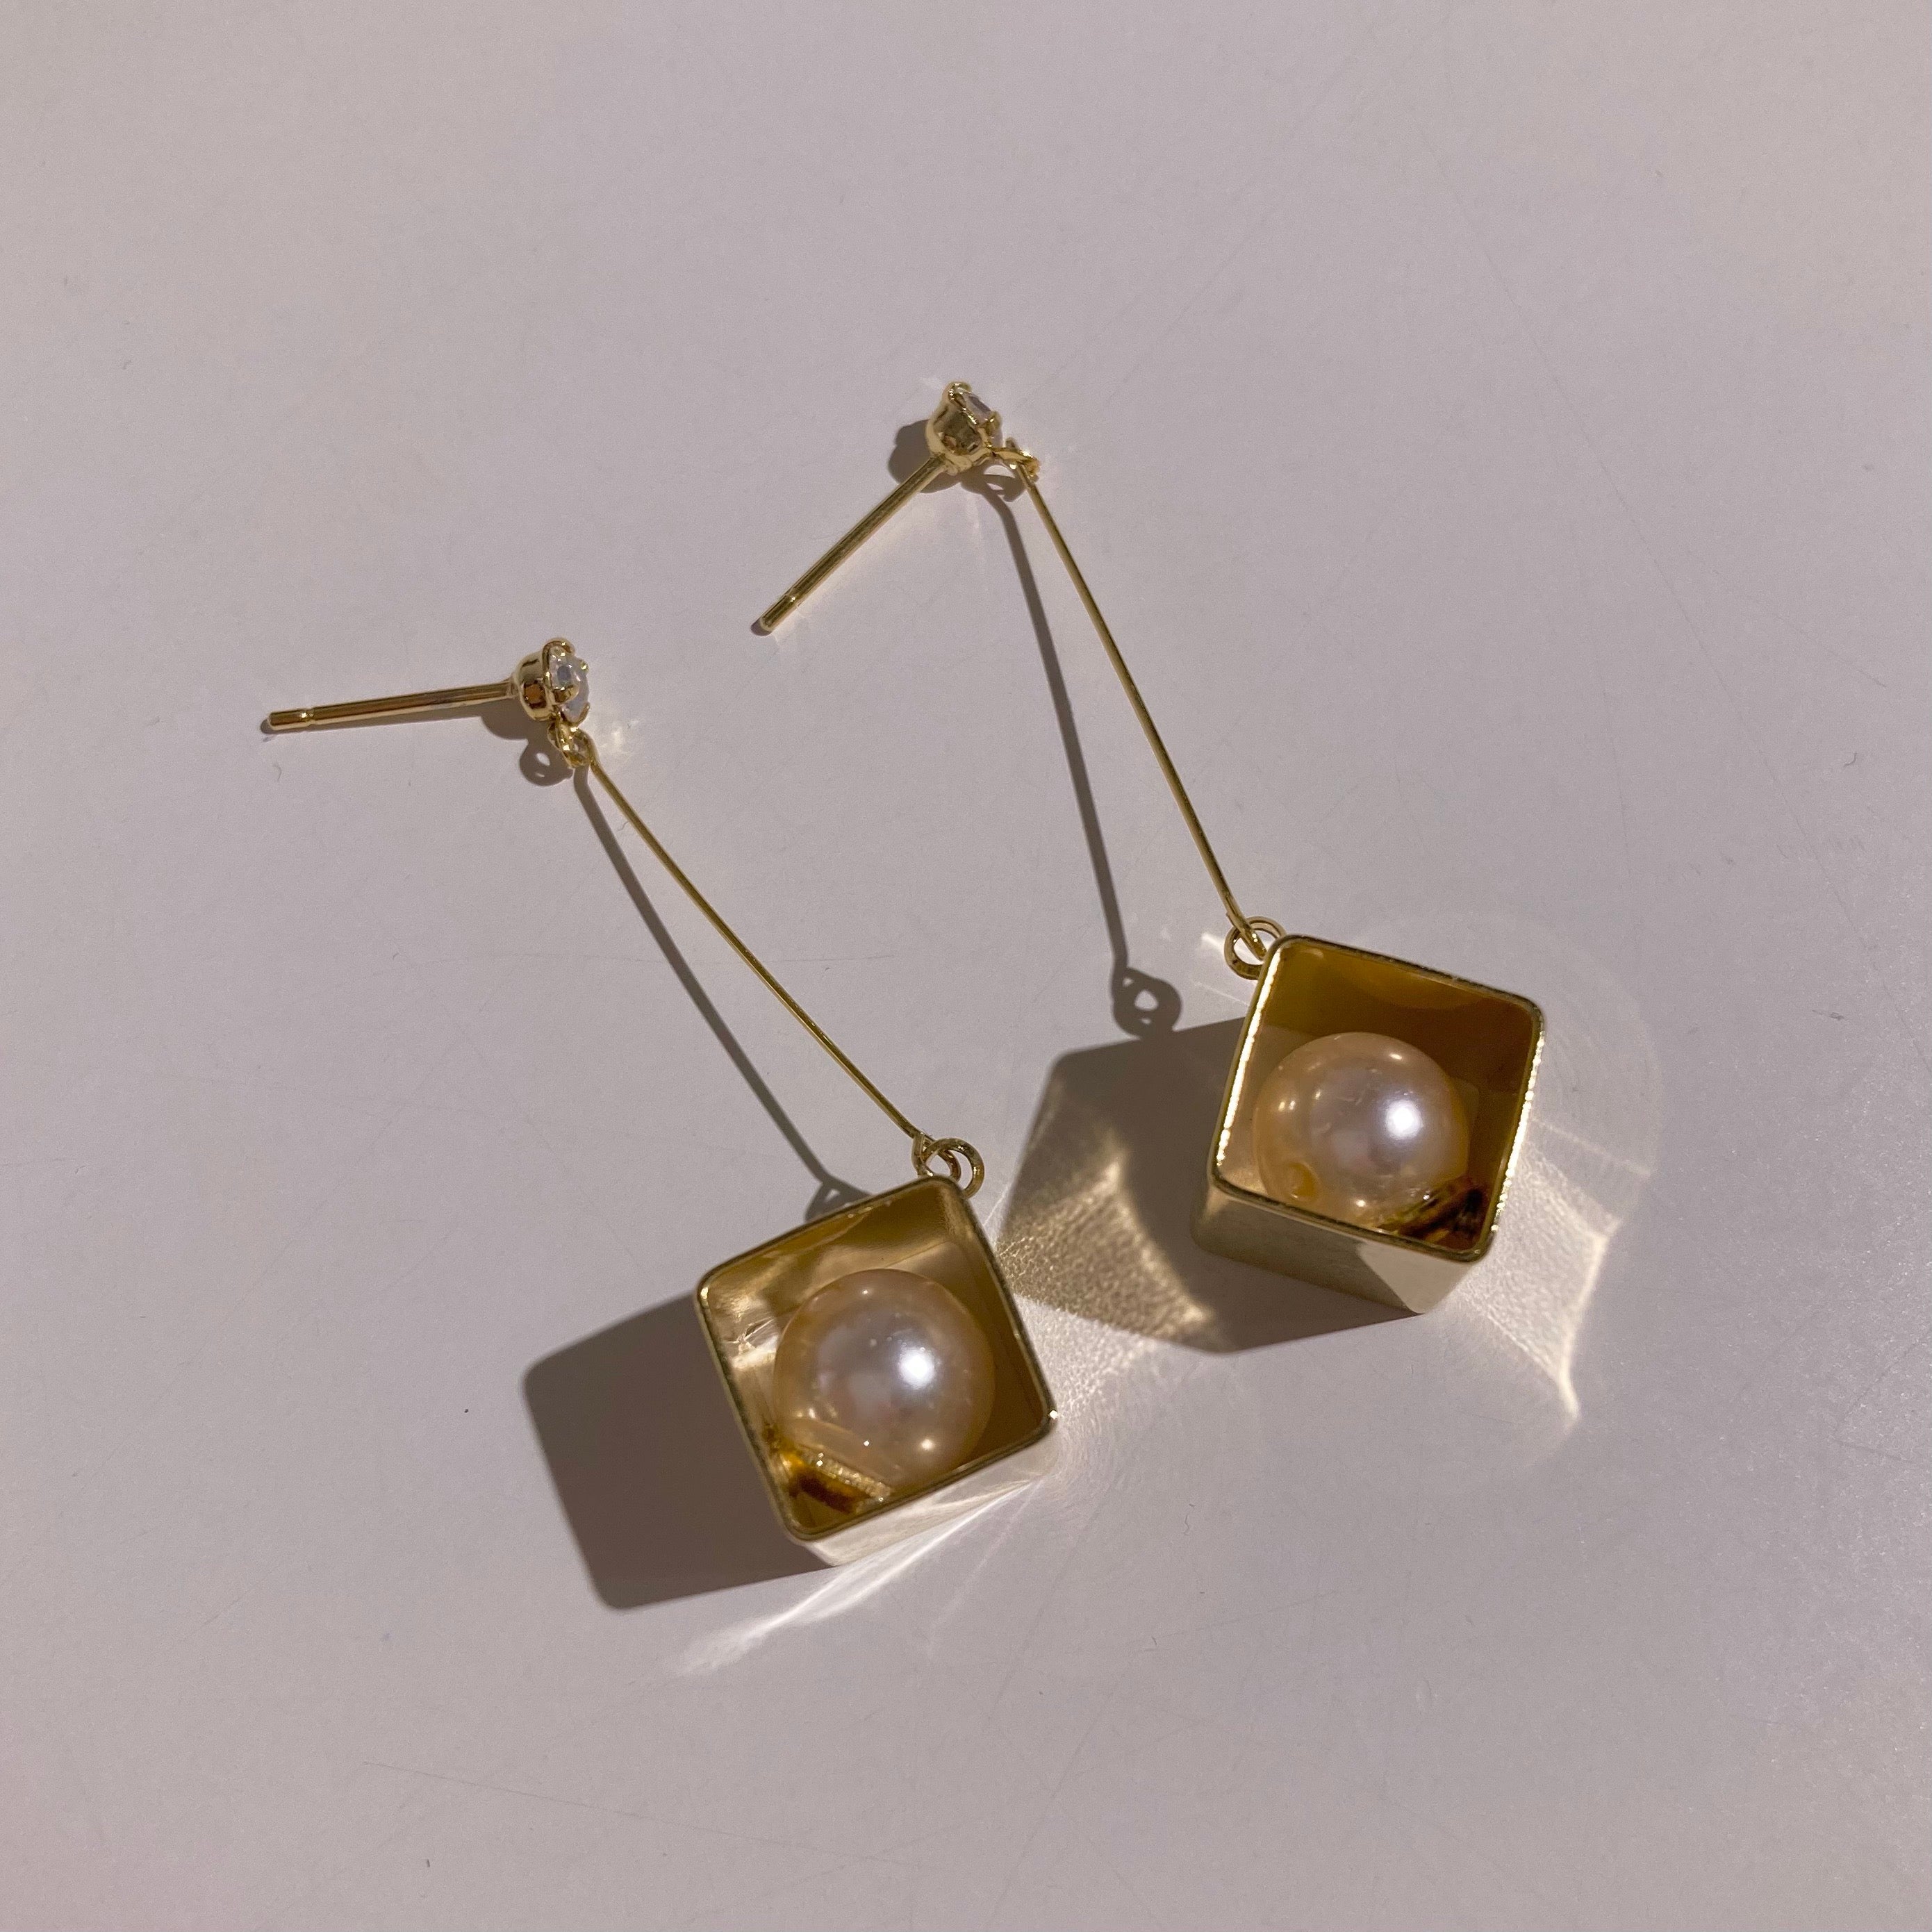 3D Cube Earrings